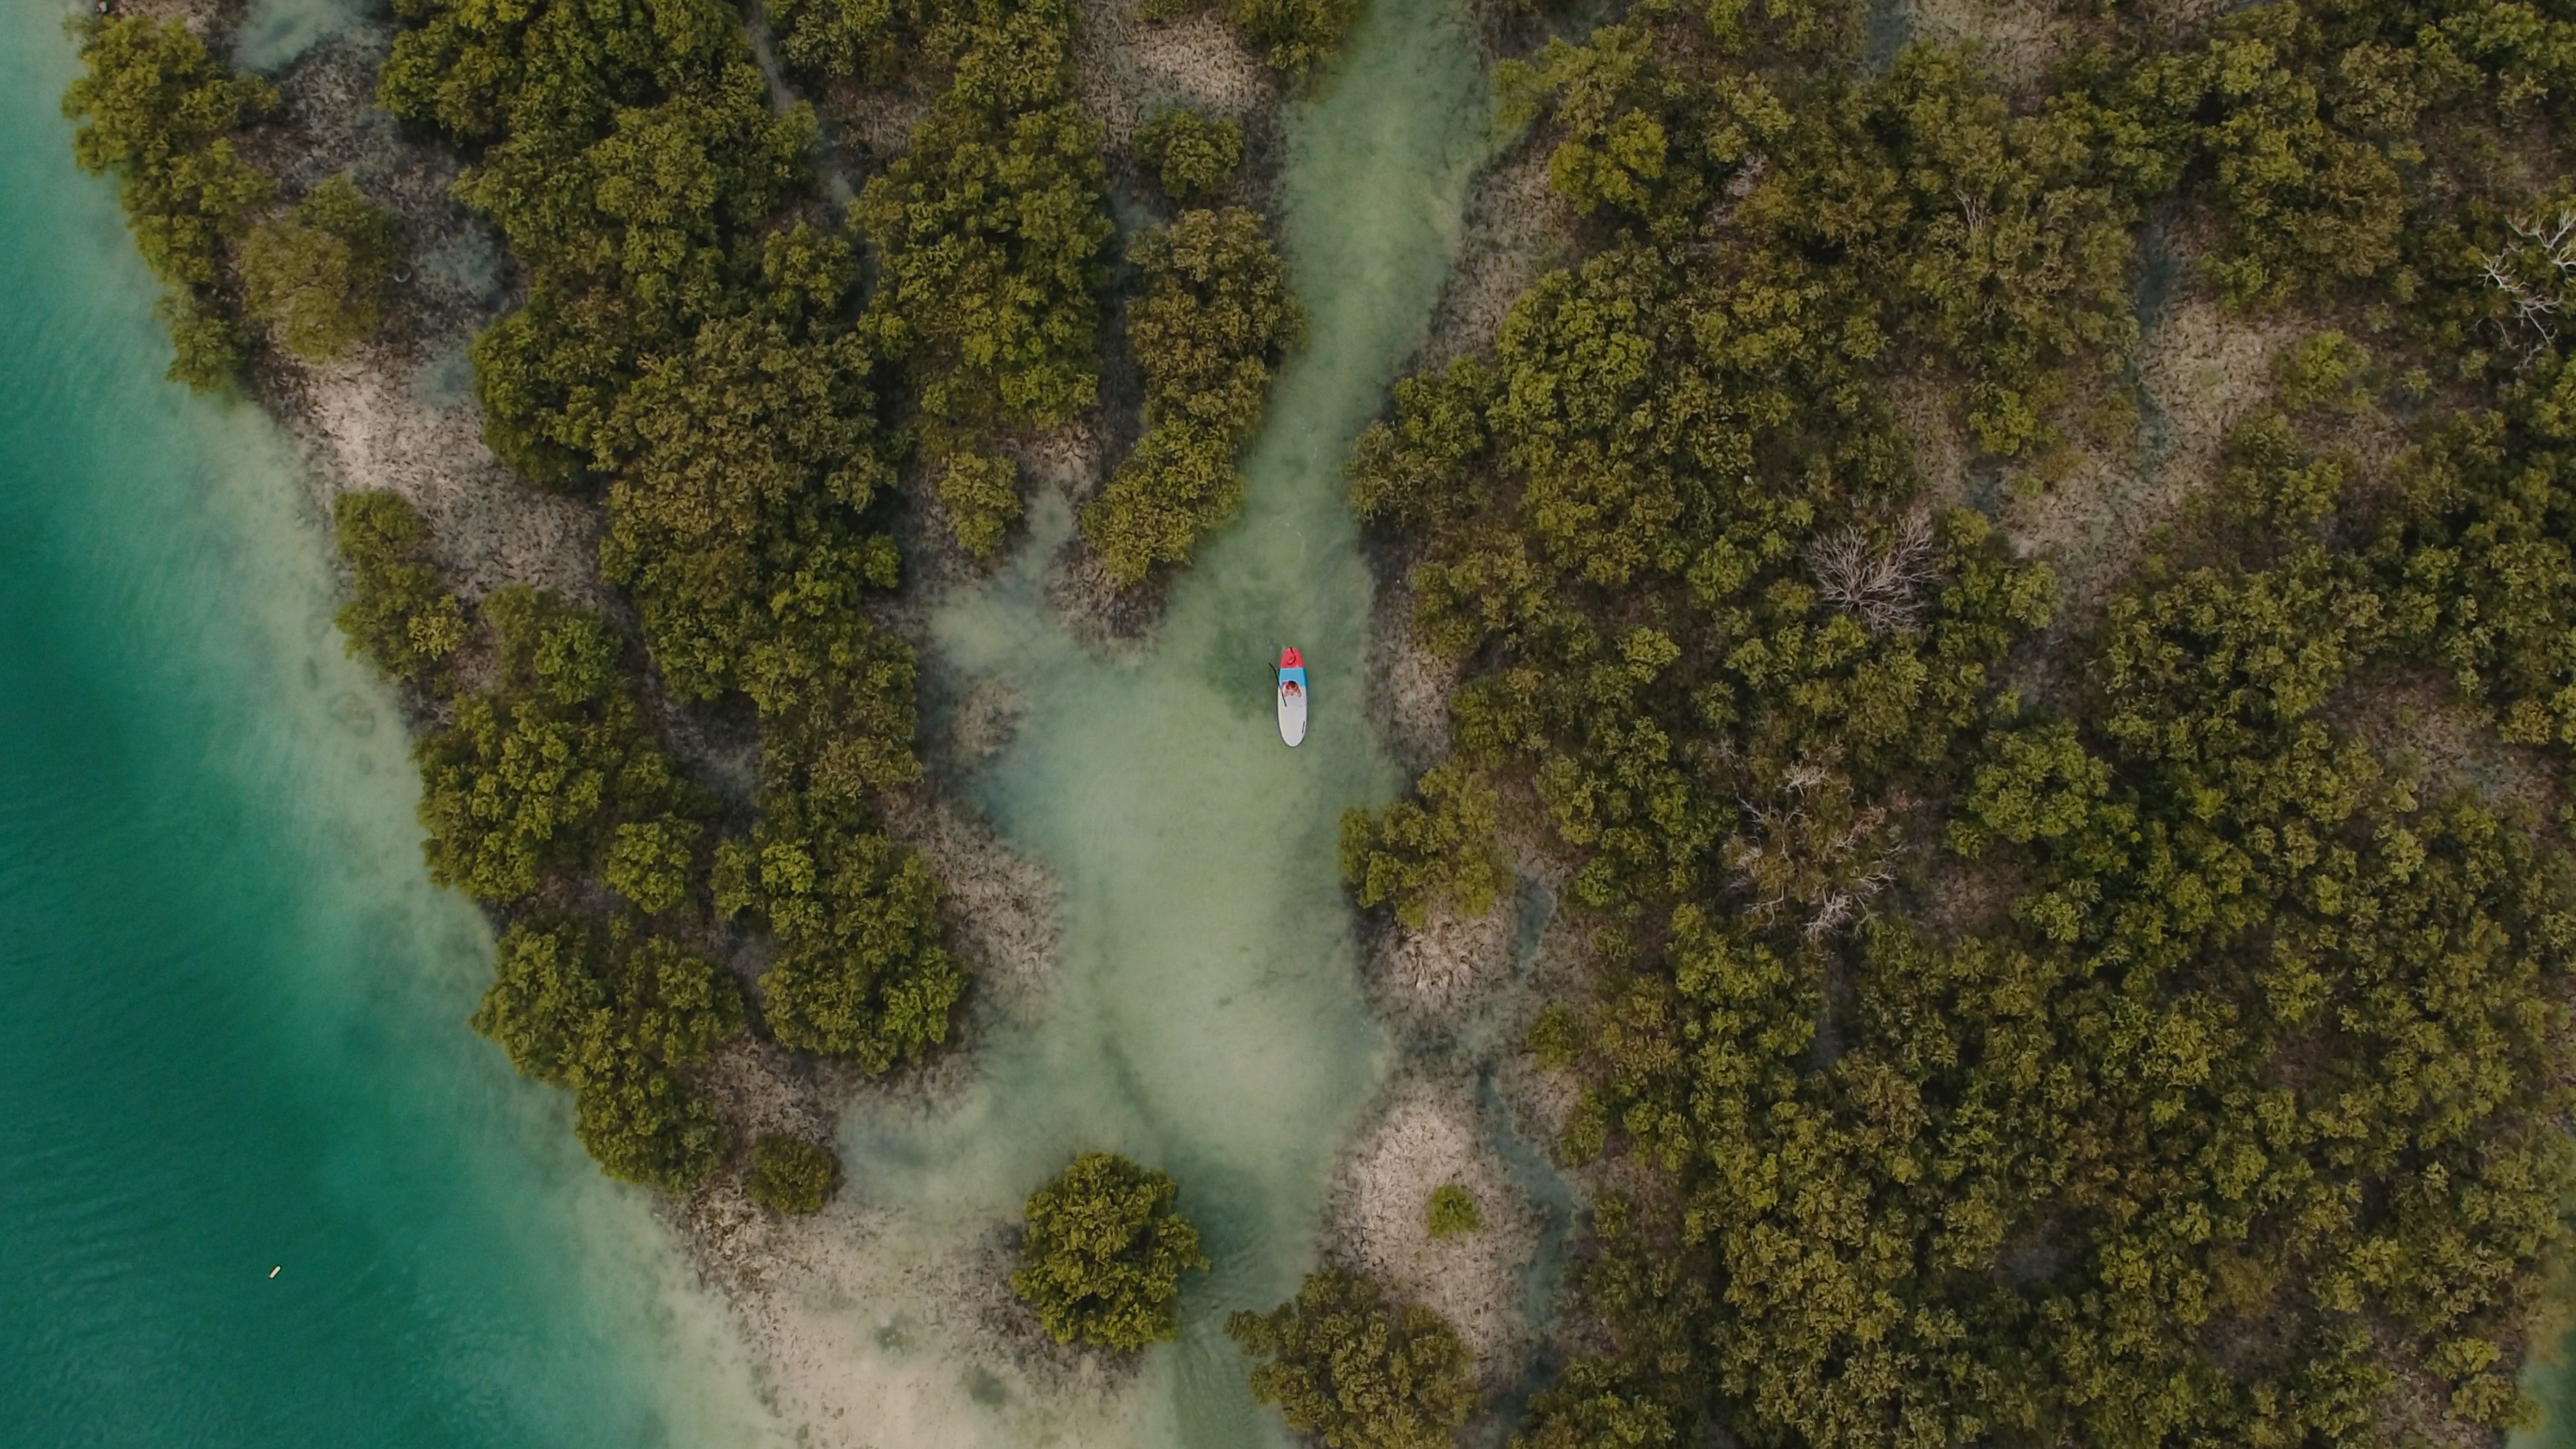 لقطة من الأعلى لكاياك وسط أشجار القرم في إحدى المحميات البحرية في أبوظبي